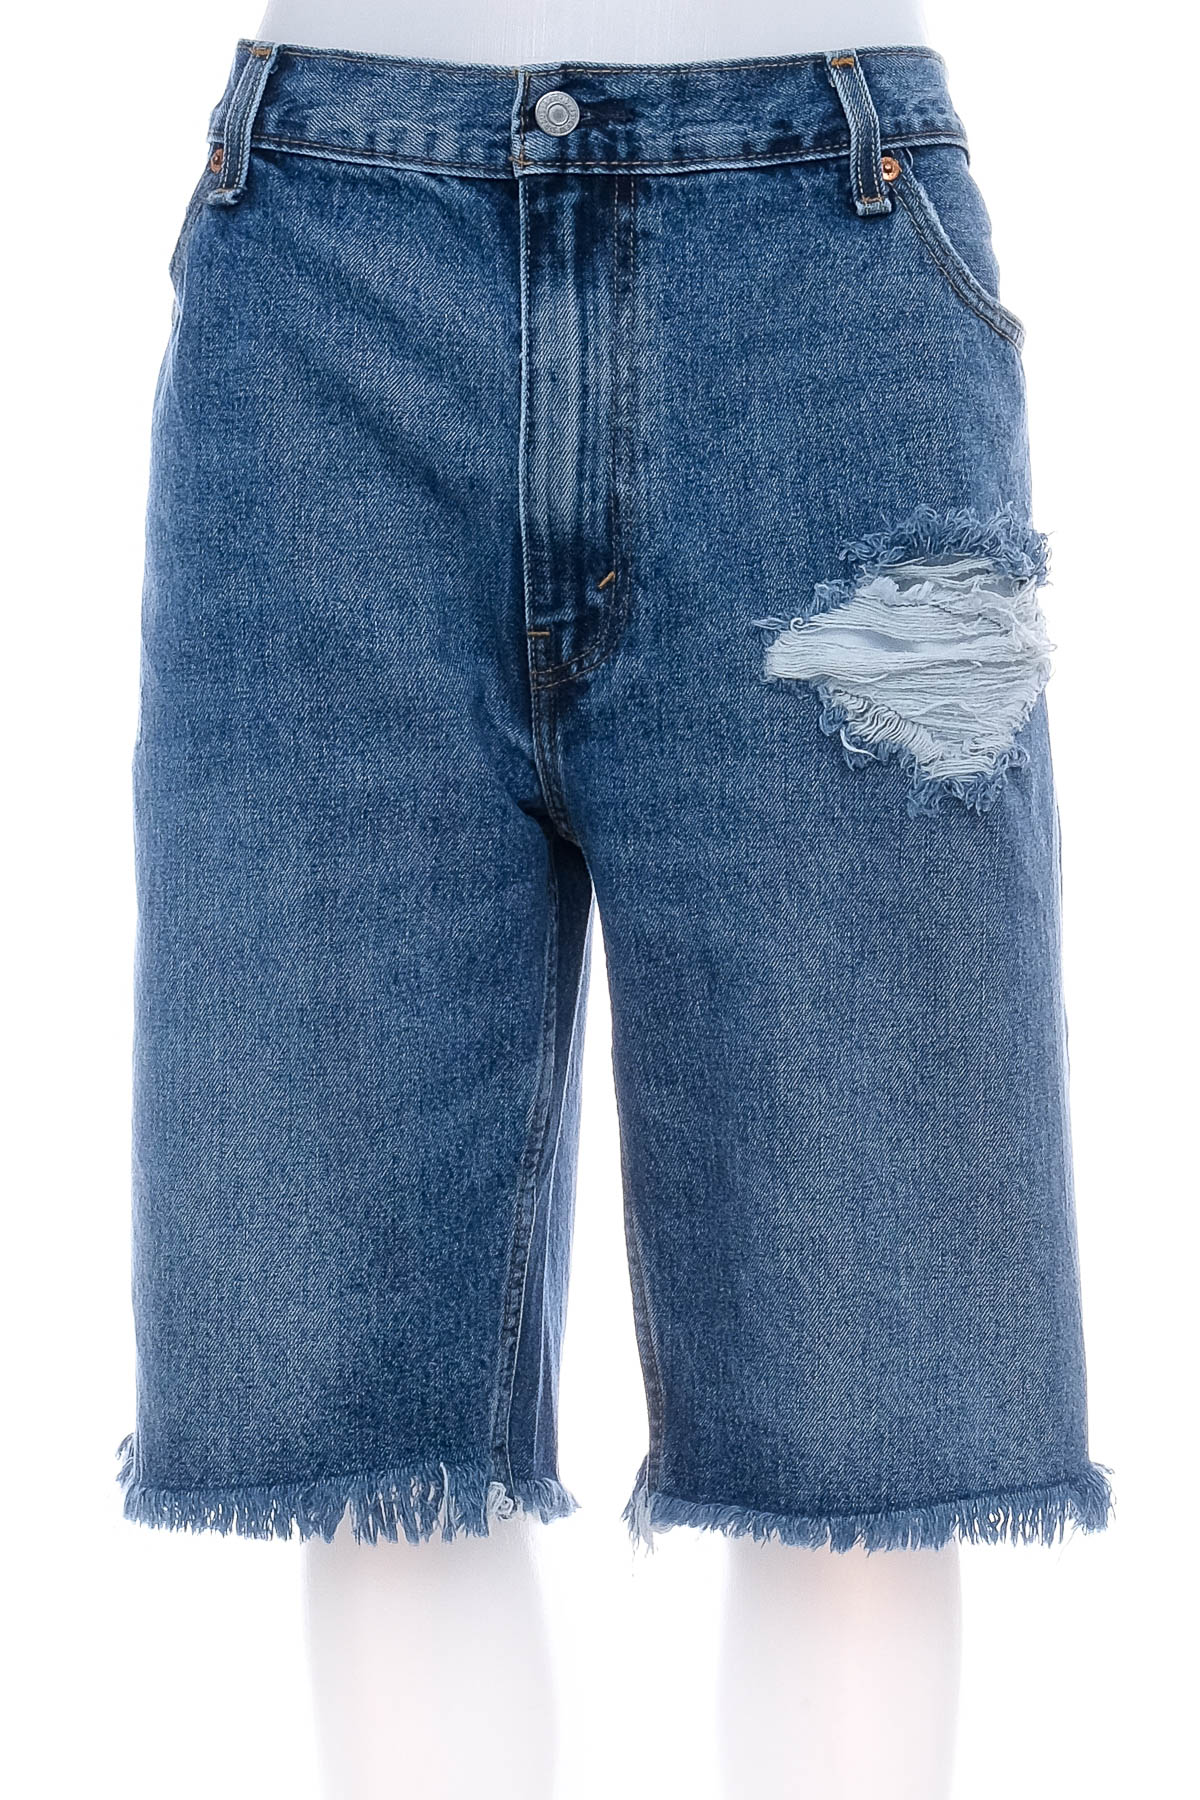 Pantaloni scurți bărbați - Levi Strauss & Co. - 0